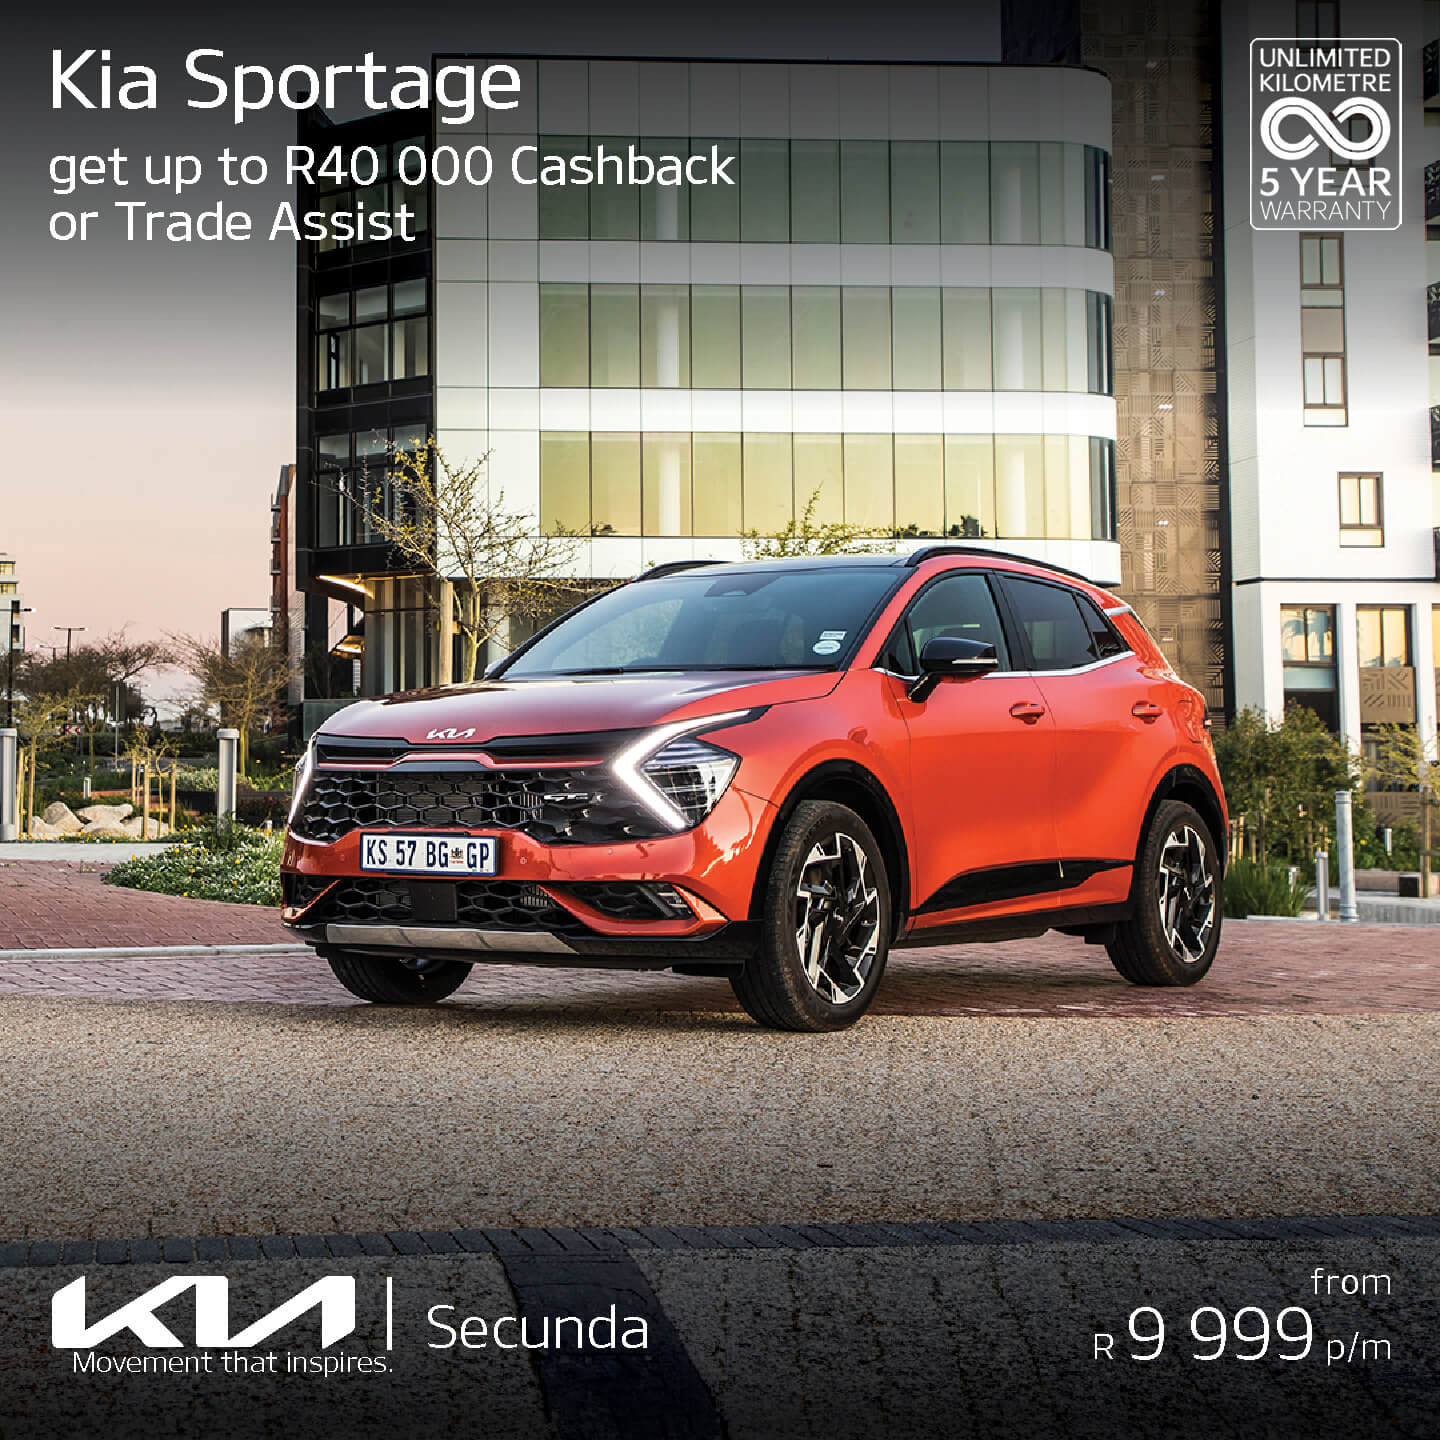 Kia Sportage image from Eastvaal Motors